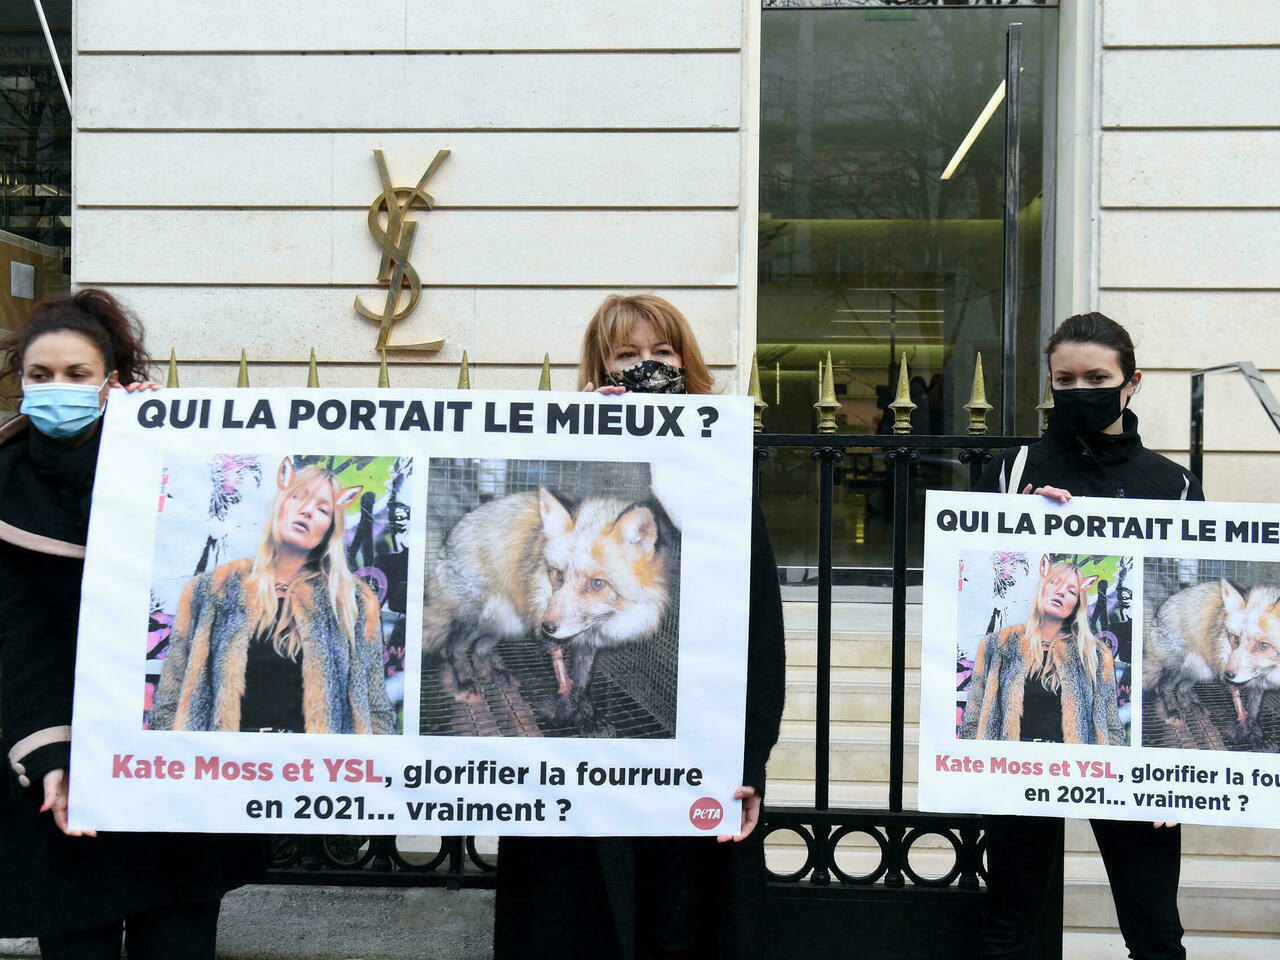 Hồi đầu năm, các tổ chức bảo vệ động vật đã biểu tình trước các cửa hàng của YSL để yêu cầu thương hiệu này ngừng sử dụng lông thú làm chất liệu thời trang. Ngoài ra, có vô số tài khoản trên Twitter cũng lên tiếng phản đối việc Kate Moss mặc áo khoác lông cáo.